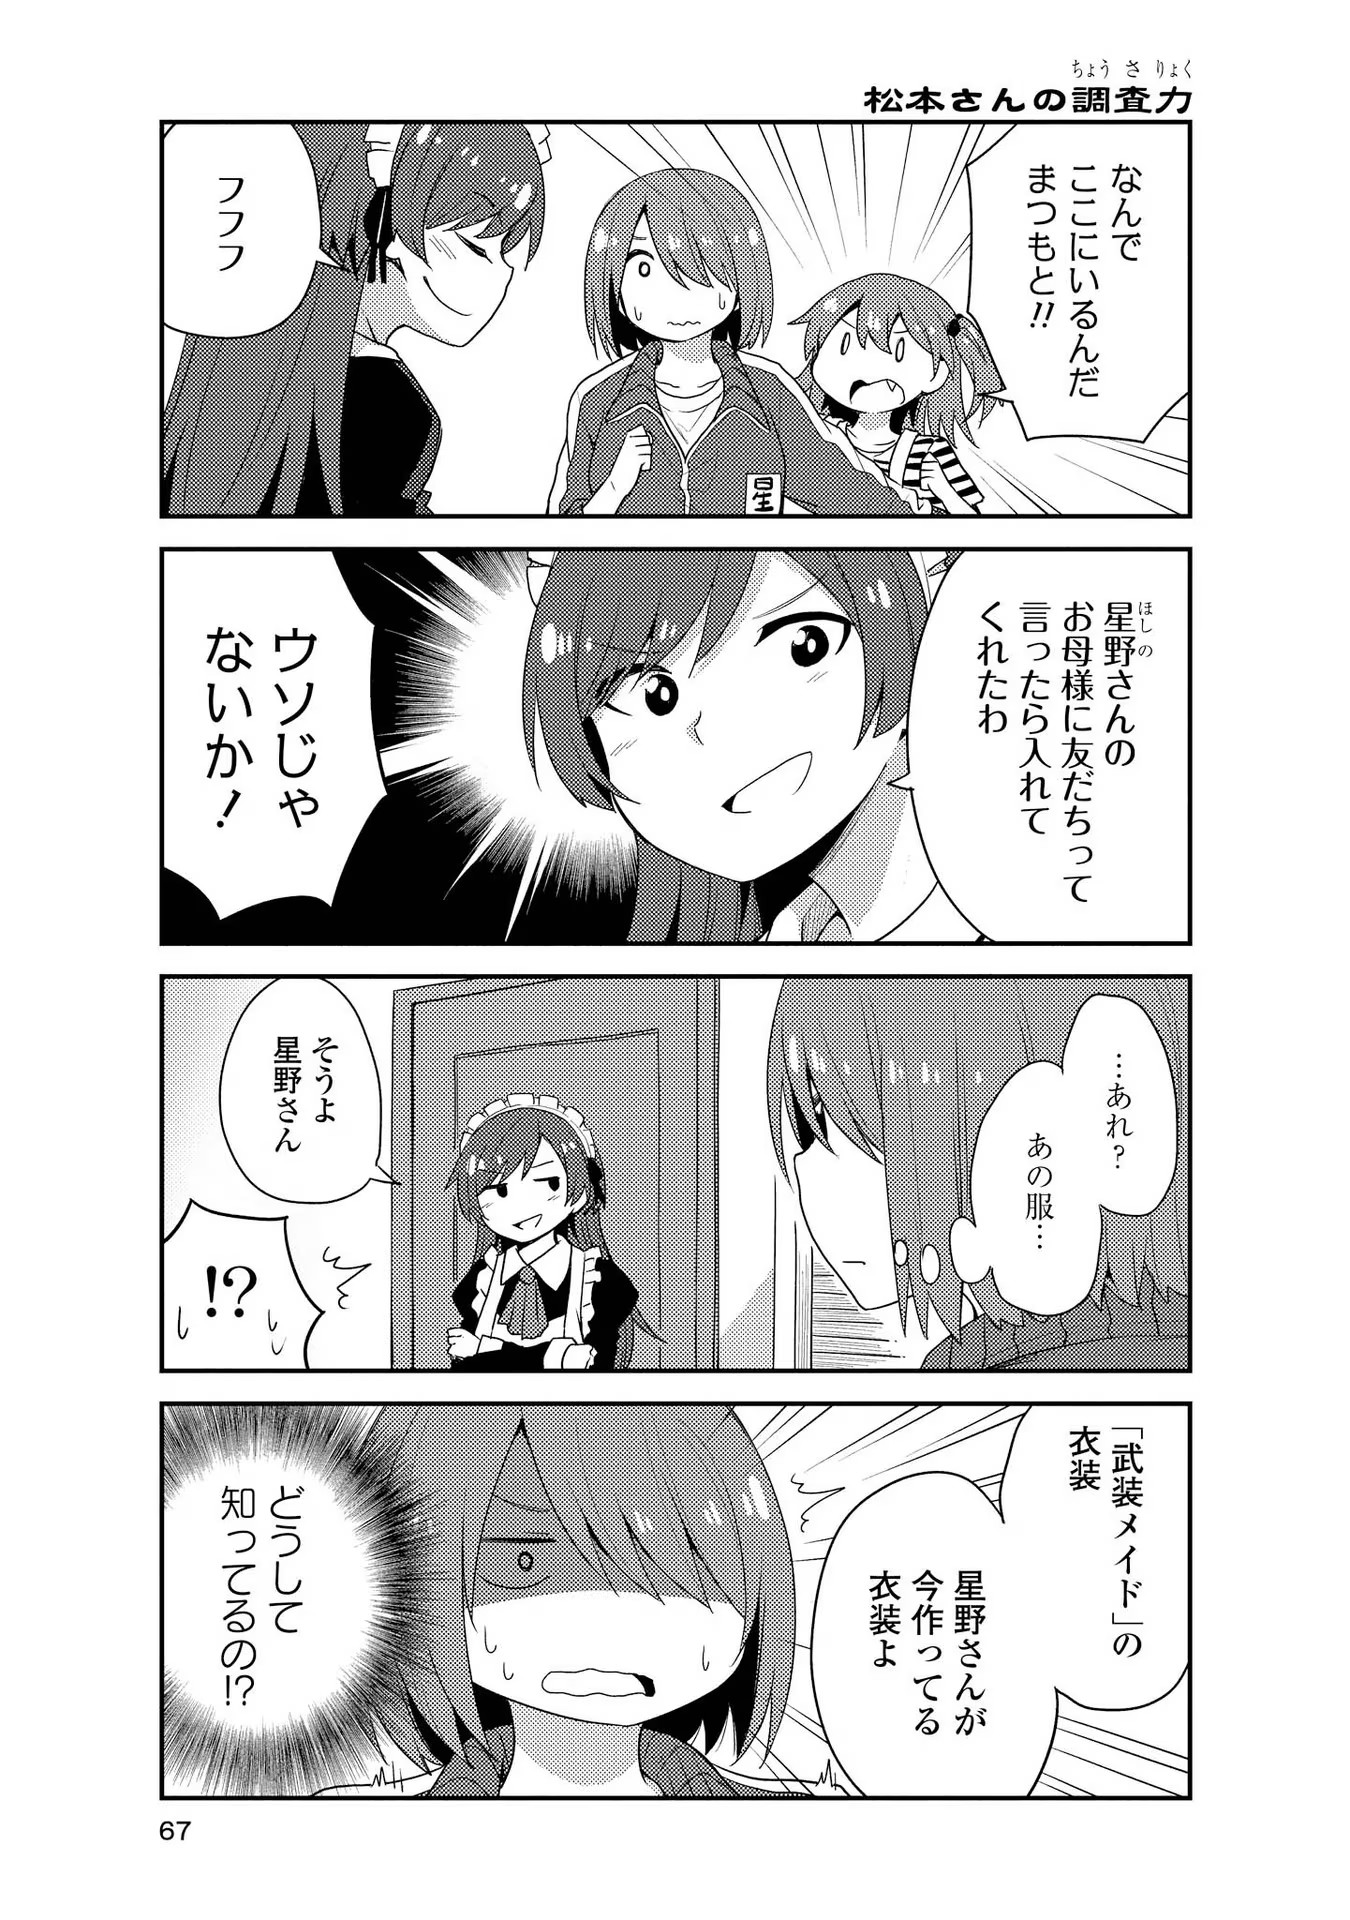 Watashi ni Tenshi ga Maiorita! - Chapter 151 - Page 5